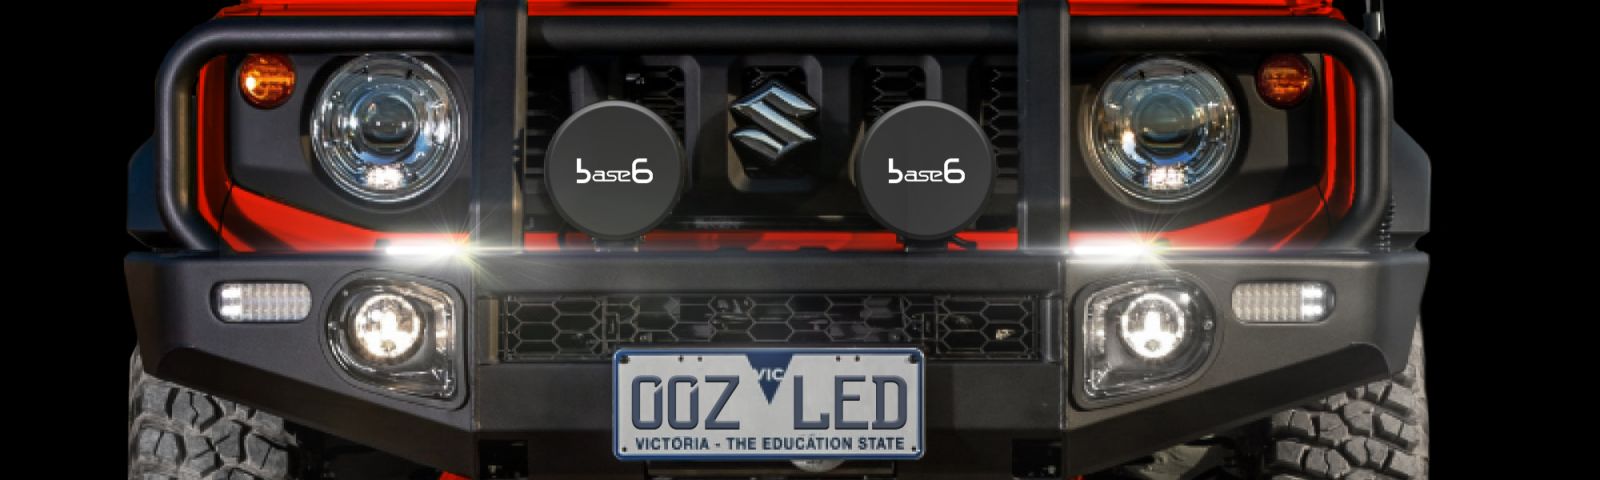 Oz led car